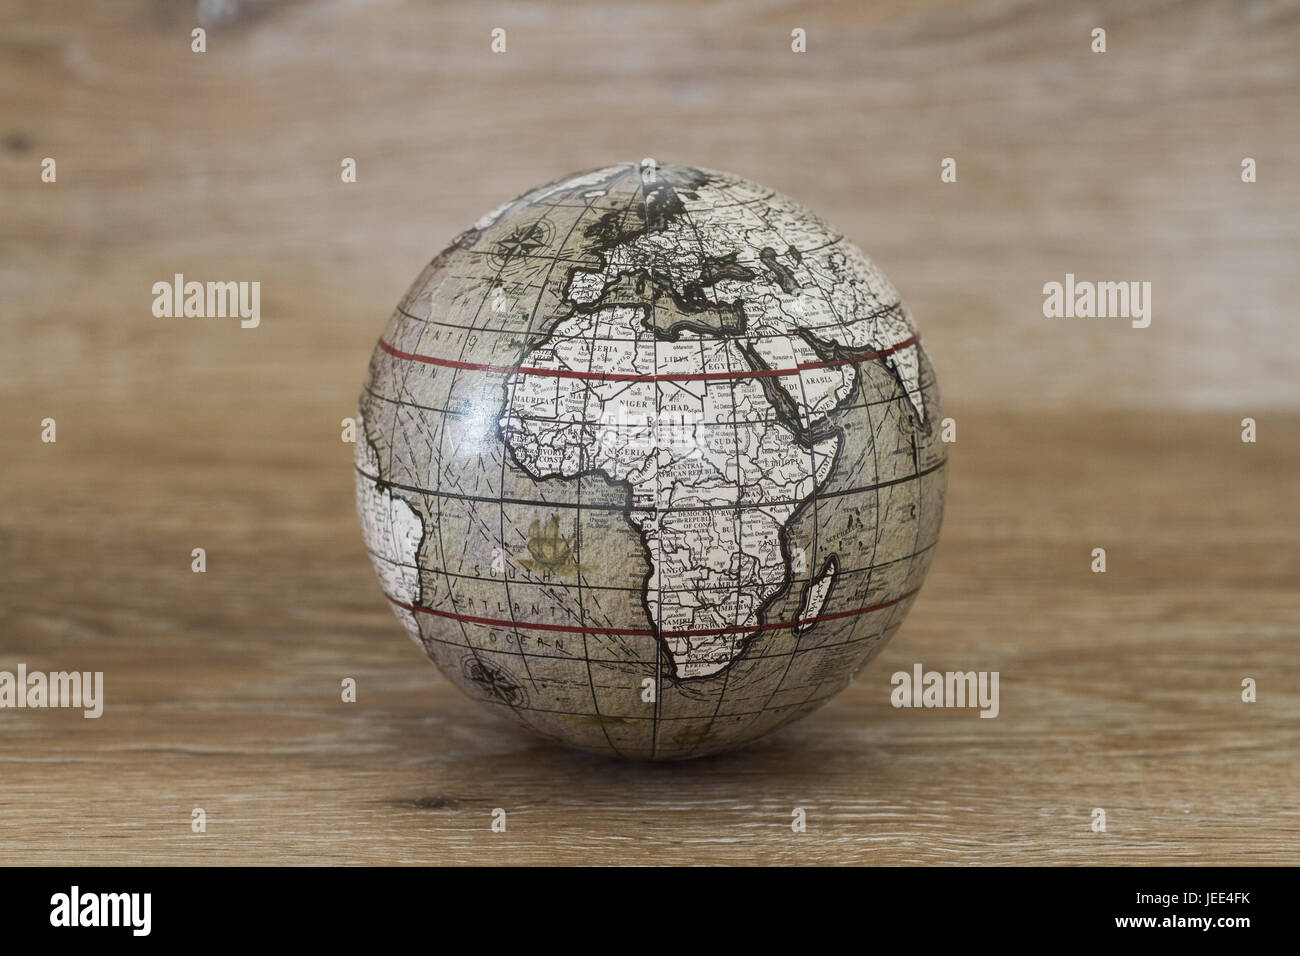 Eine Kugel oder Globus der Welt, die einen Oldtimer und alte altmodischen Look auf einem hölzernen Hintergrund hat. Stockfoto